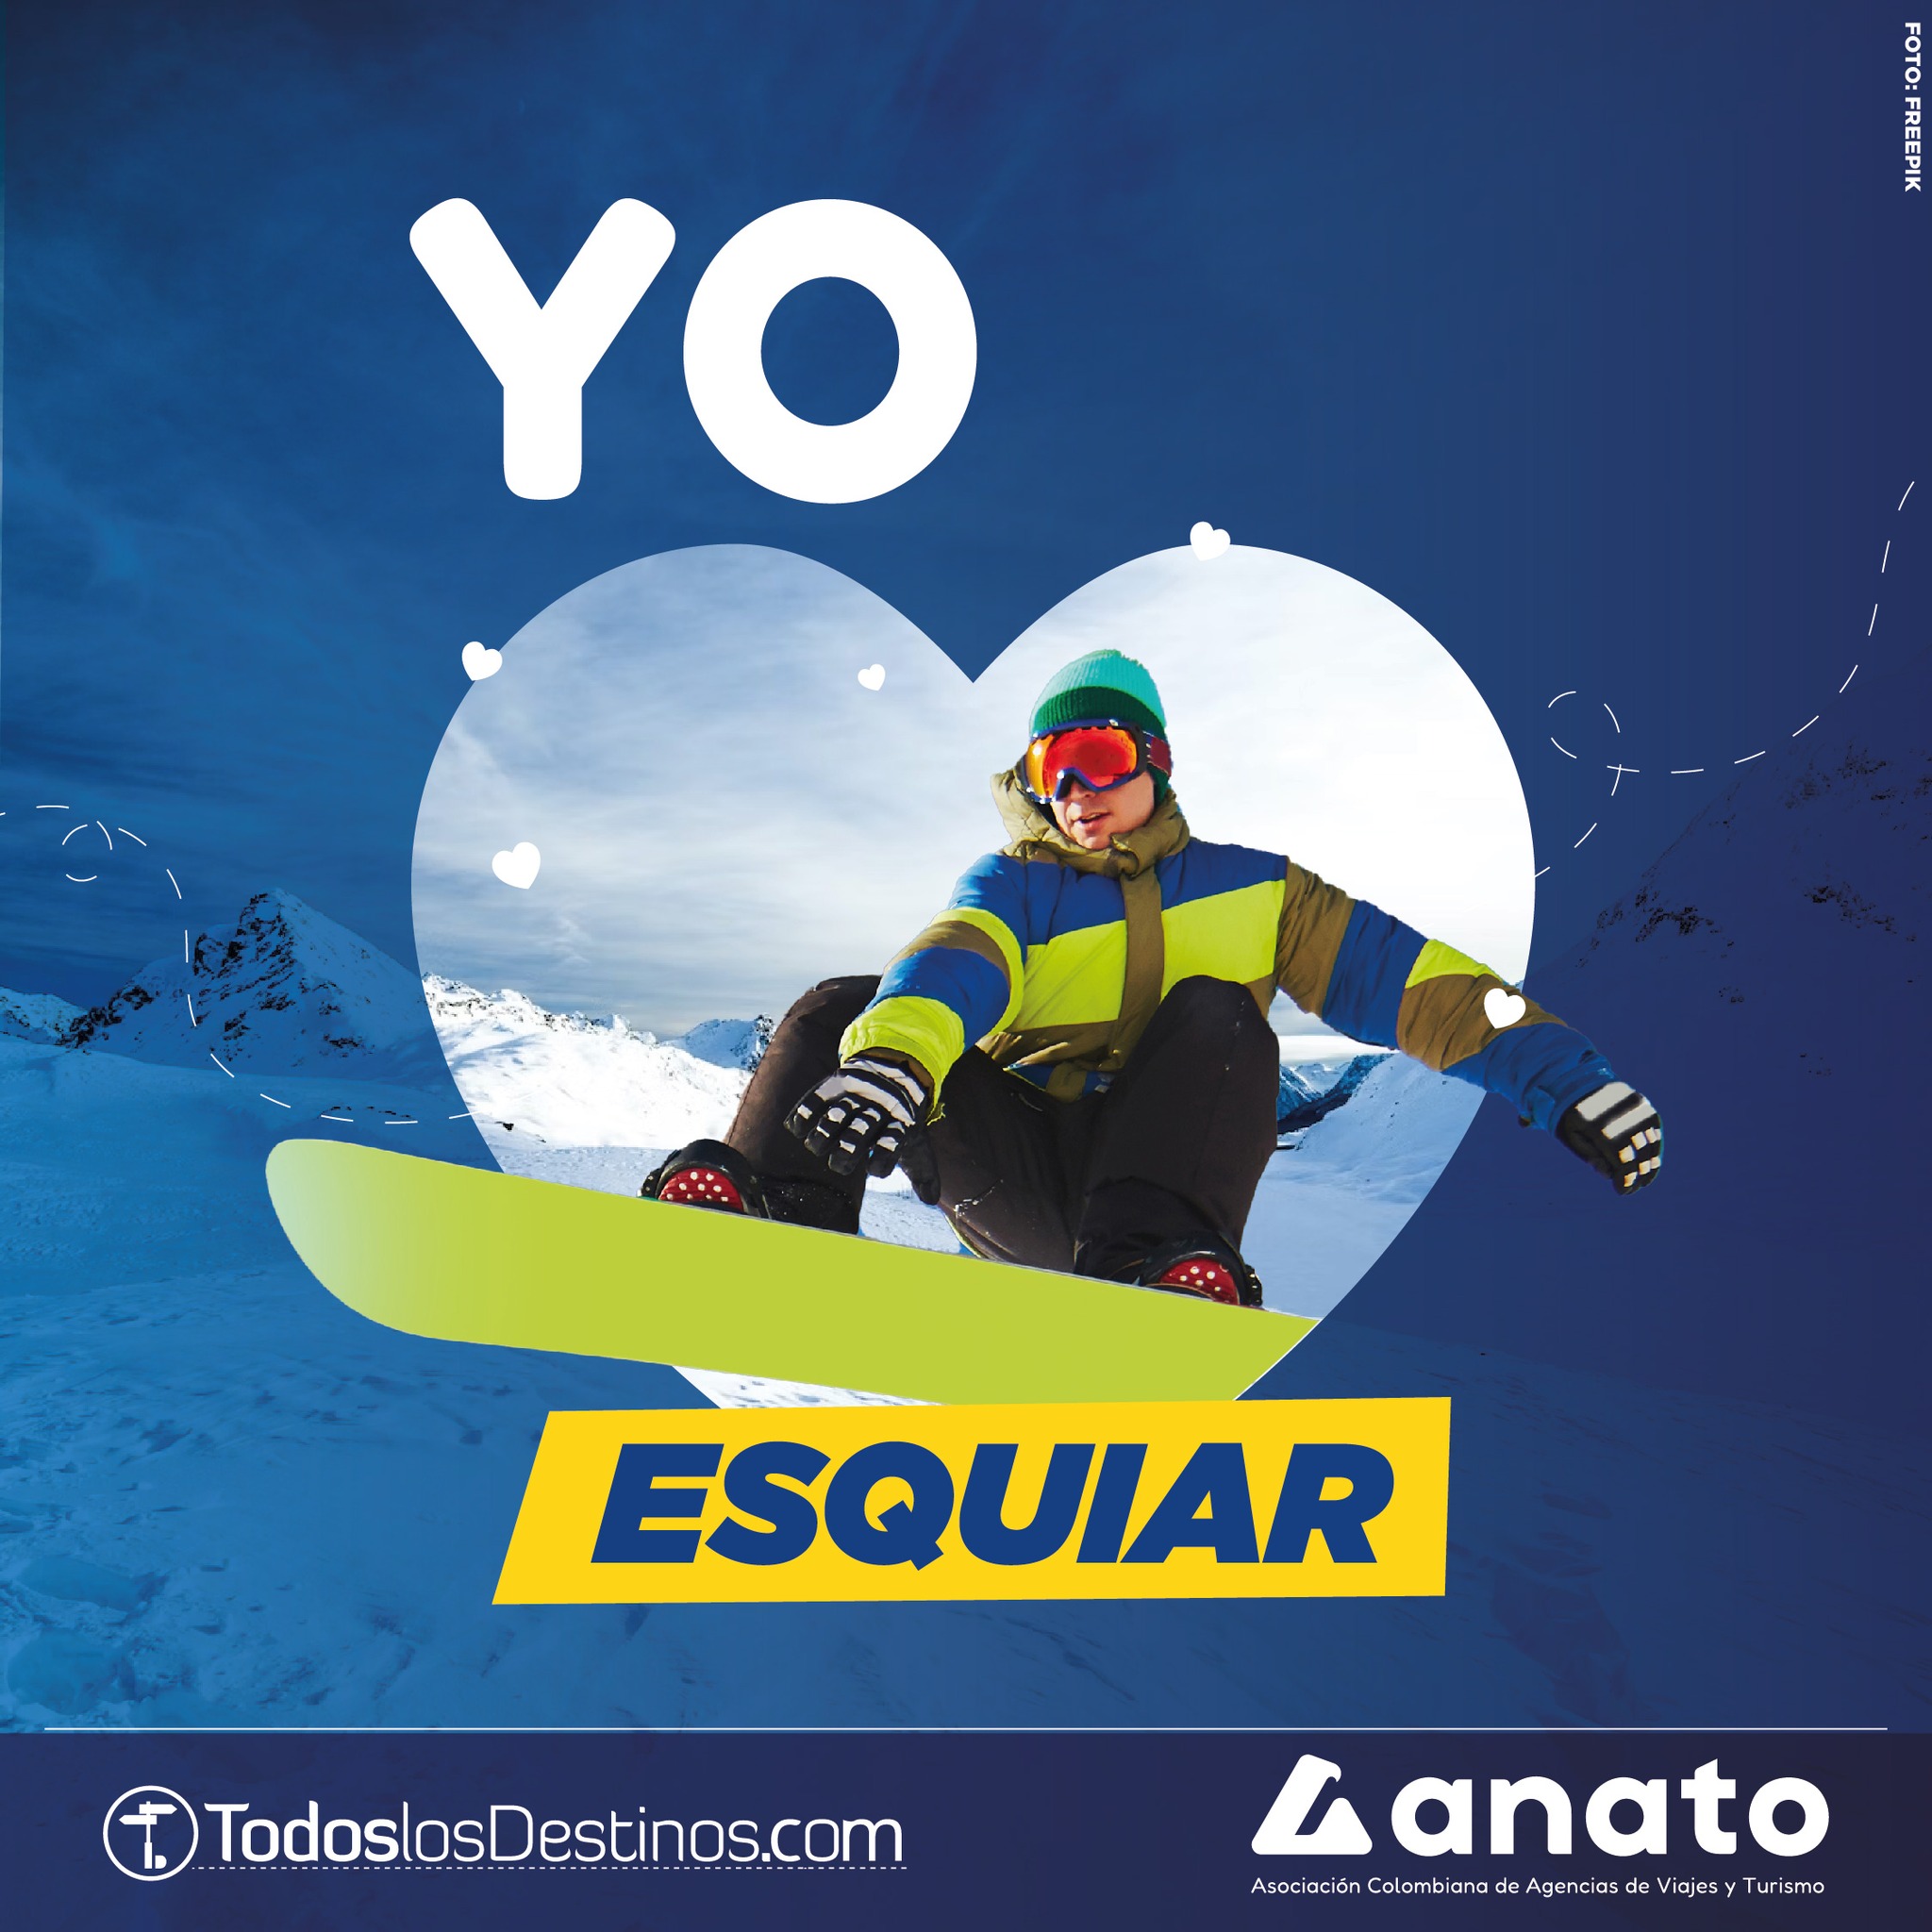 #ConsultaTuAgenciadeViajes | Dale like si amas esquiar y corre a Todoslosdestinos.com para comprar una experiencia turística inolvidable.